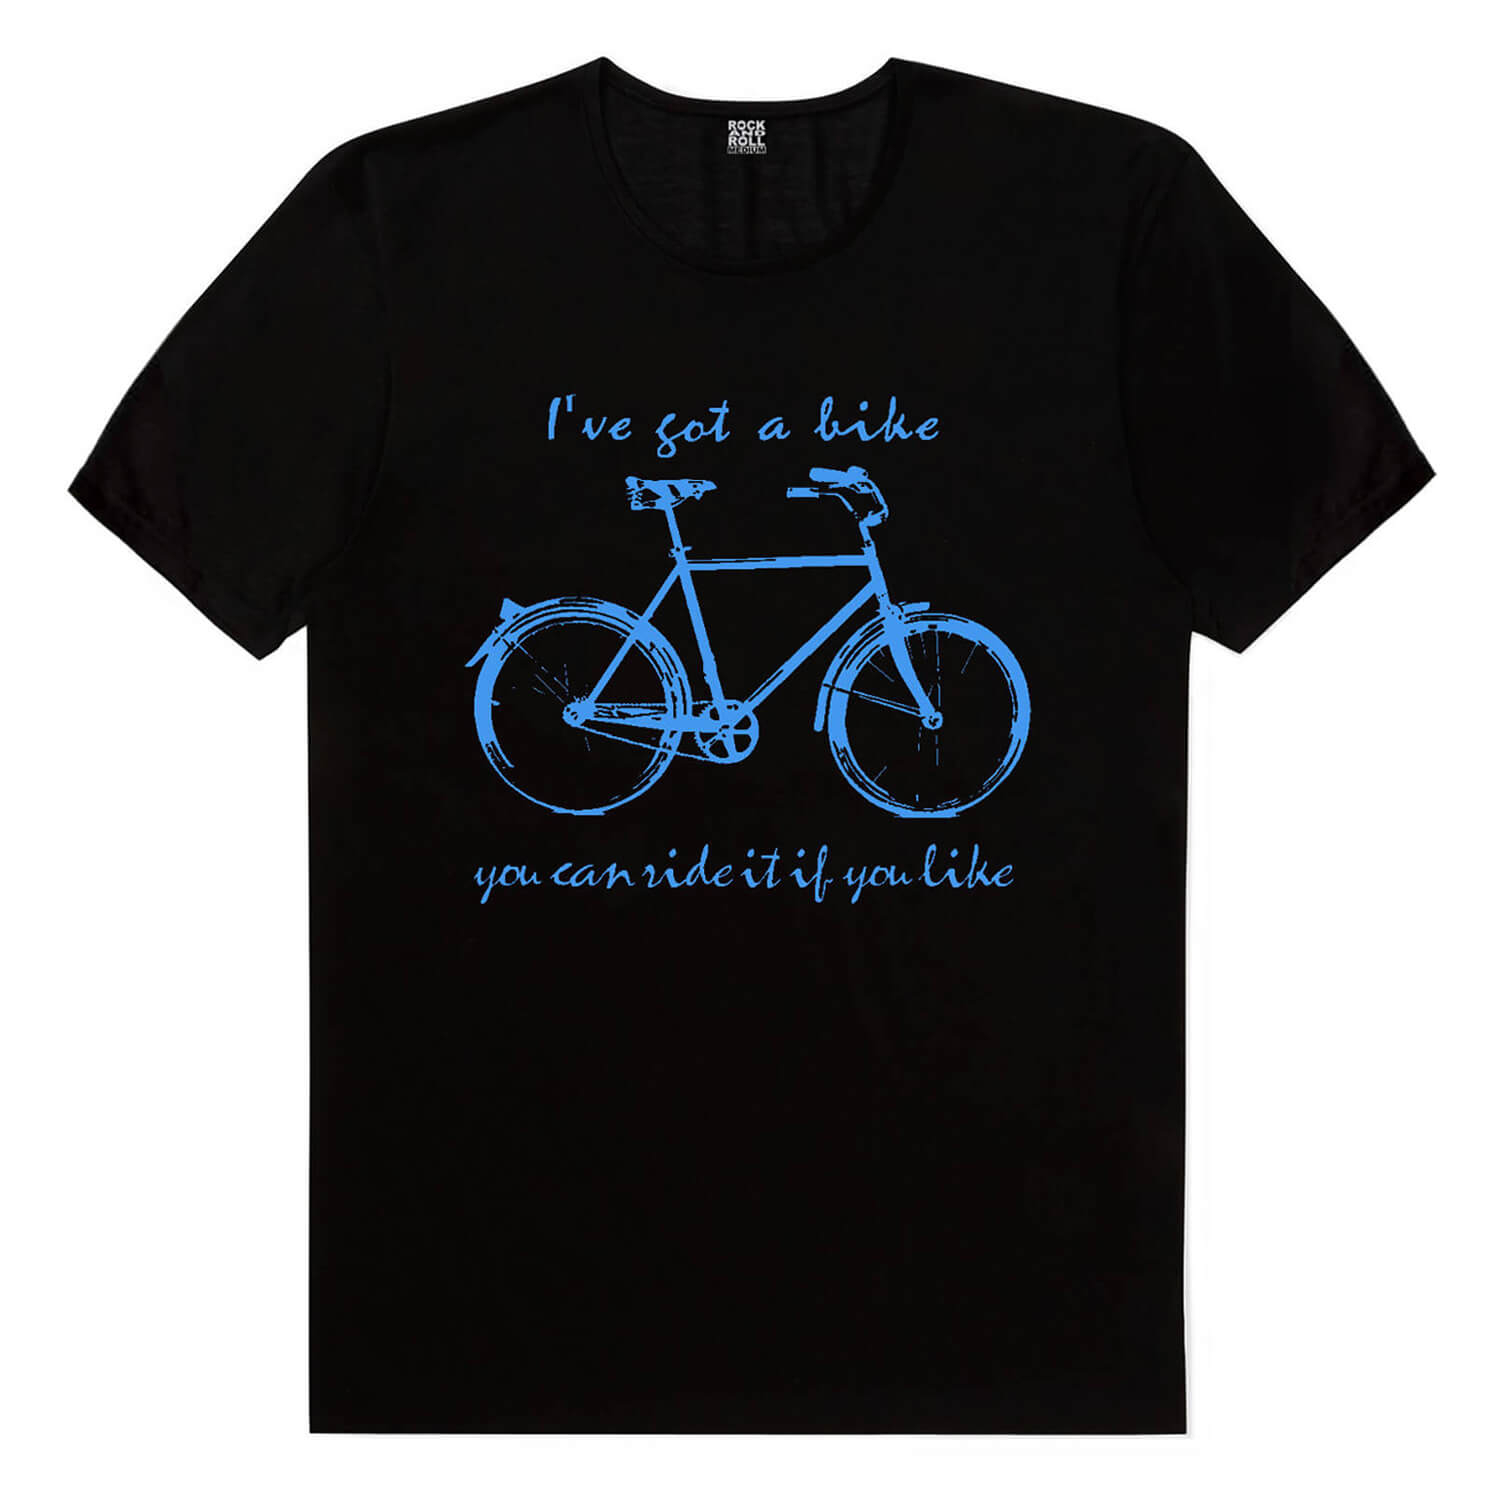 Bisikletli Astronot, Benim Bisikletim Siyah, Yarış Bisikleti Yazılar Beyaz Erkek 3'lü Eko Paket T-shirt